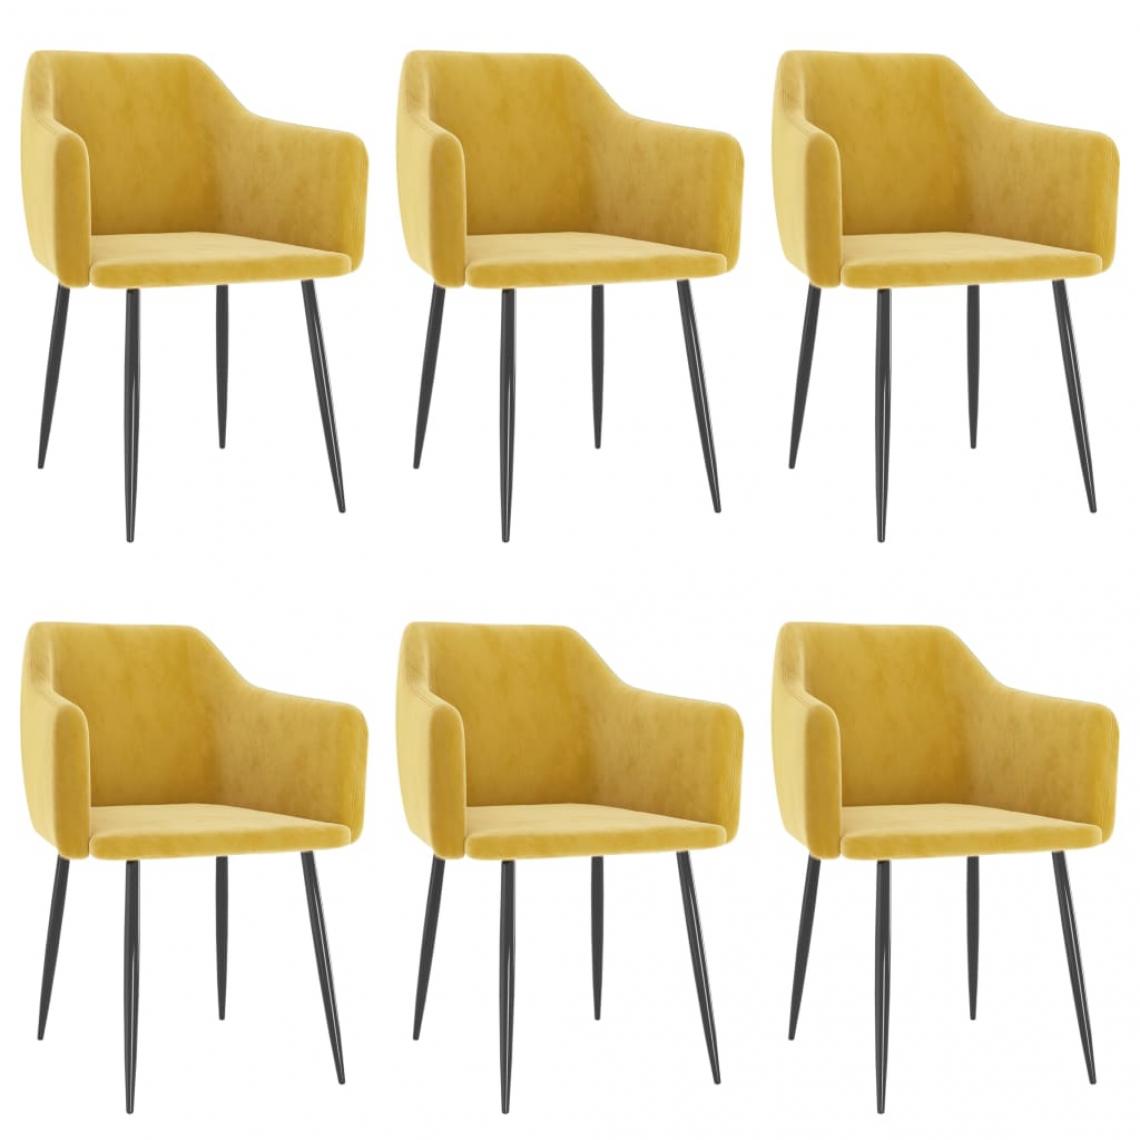 Decoshop26 - Lot de 6 chaises de salle à manger cuisine design moderne velours jaune moutarde CDS022523 - Chaises